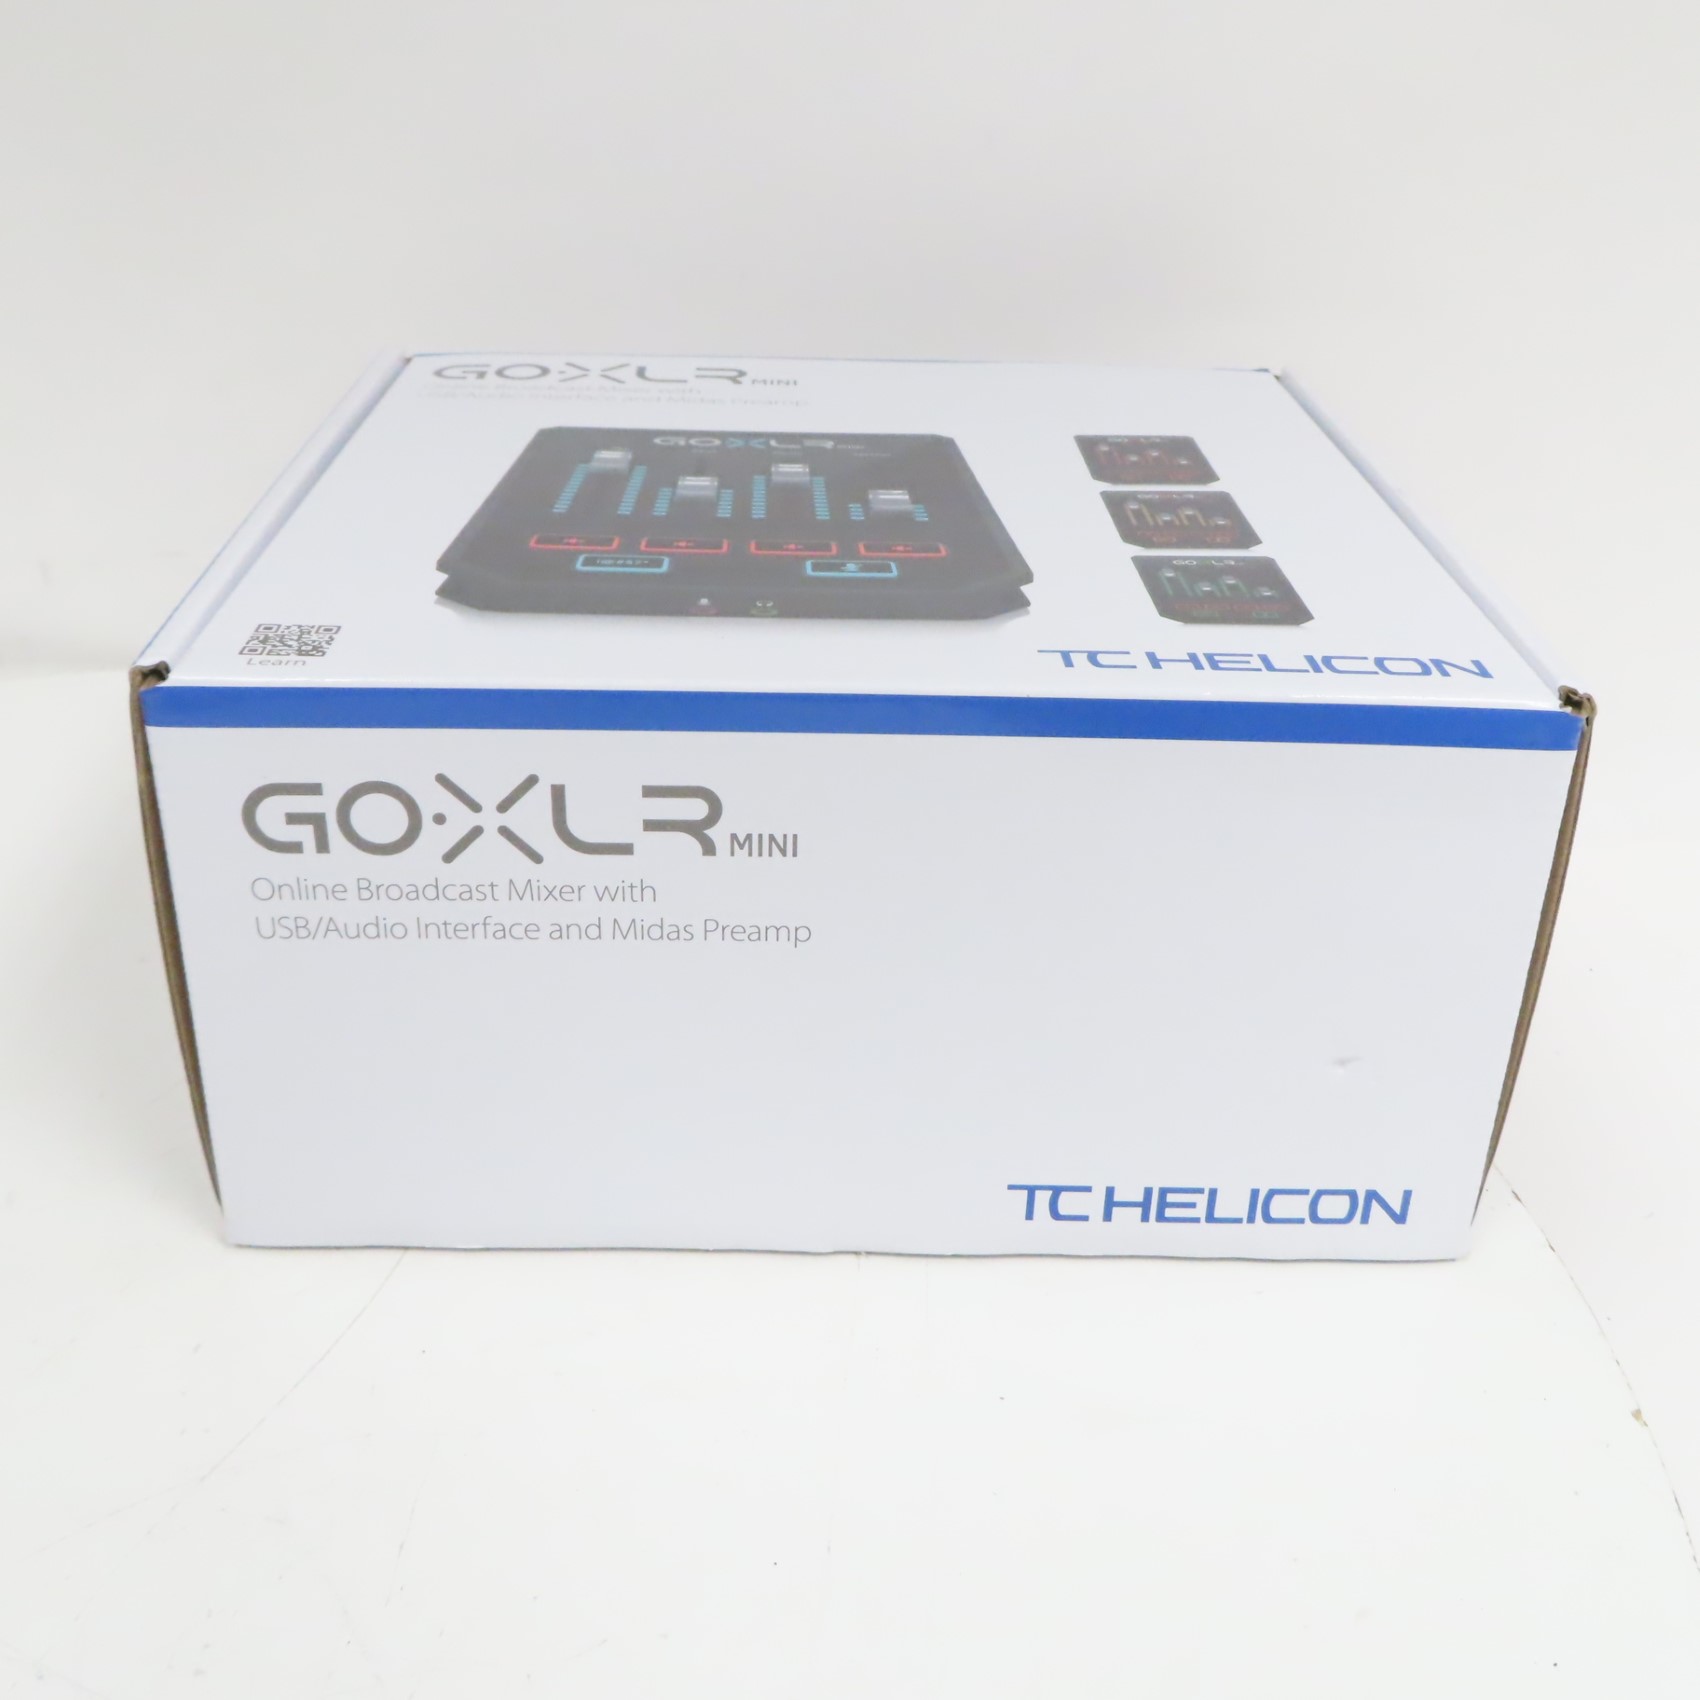 TC-Helicon GO XLR MINI Audio Interface